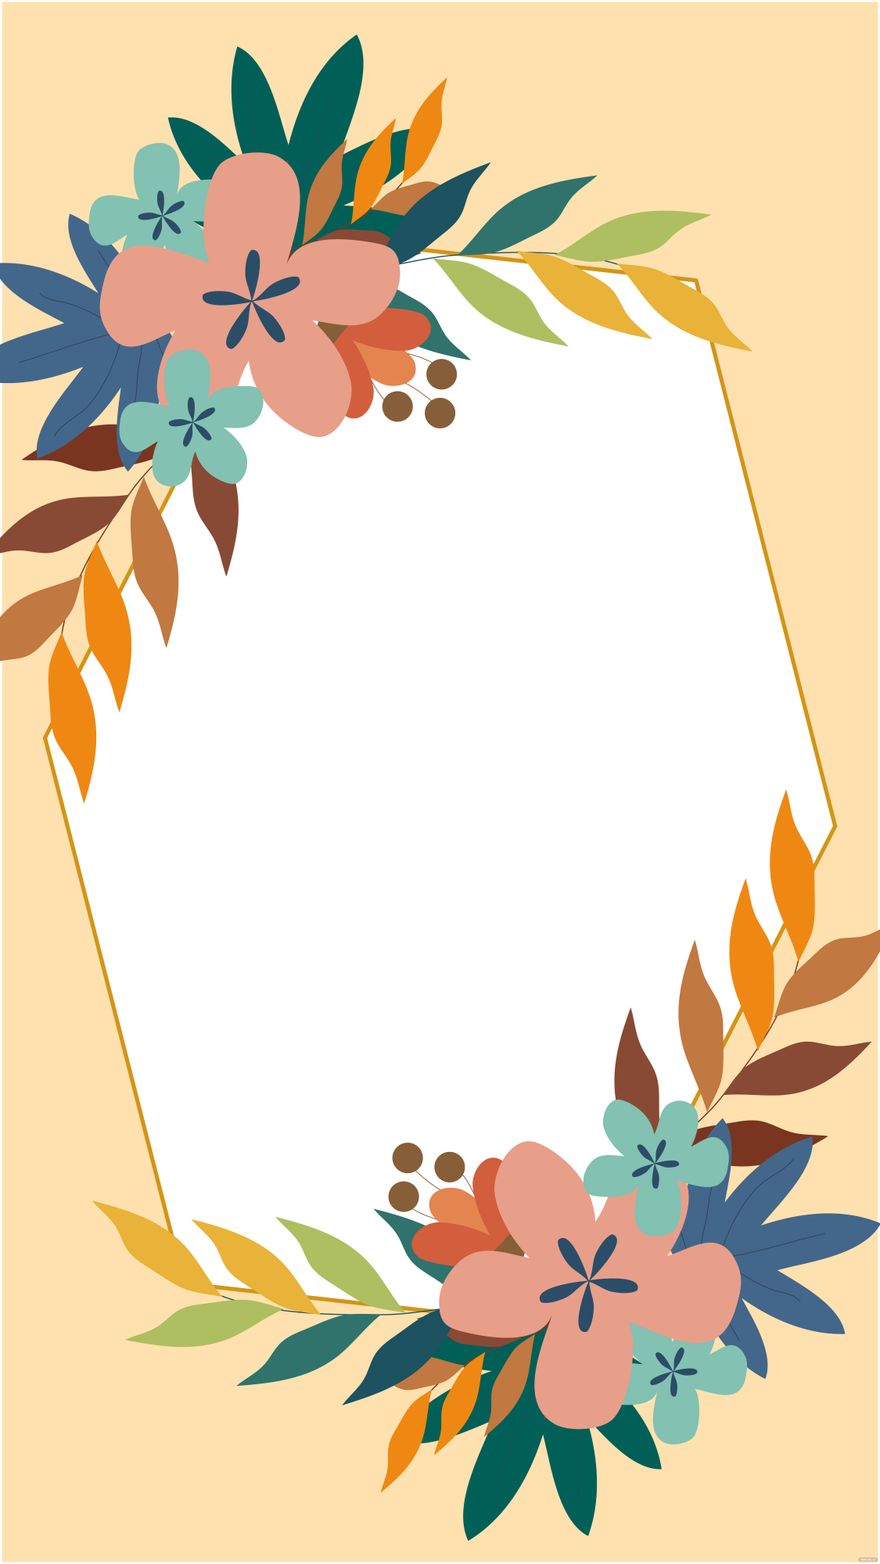 Floral Frame Wedding Background in Illustrator, EPS, SVG, JPG